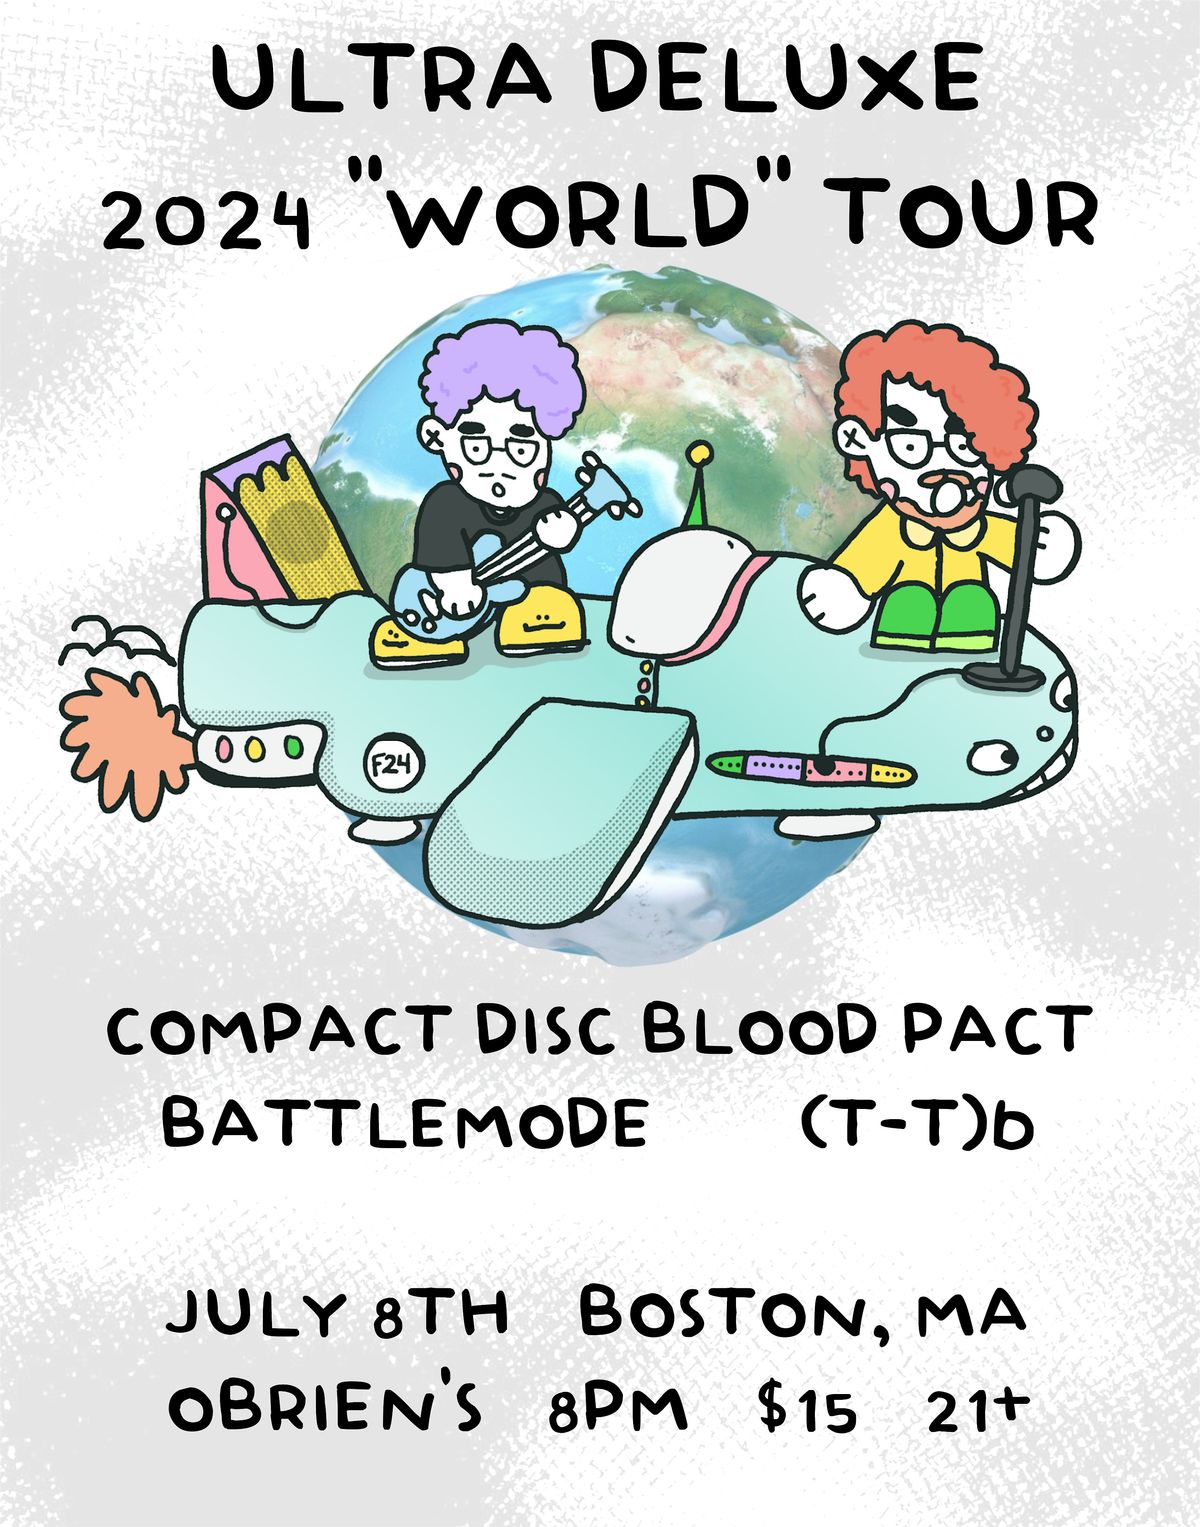 Ultra Deluxe World Tour - Boston